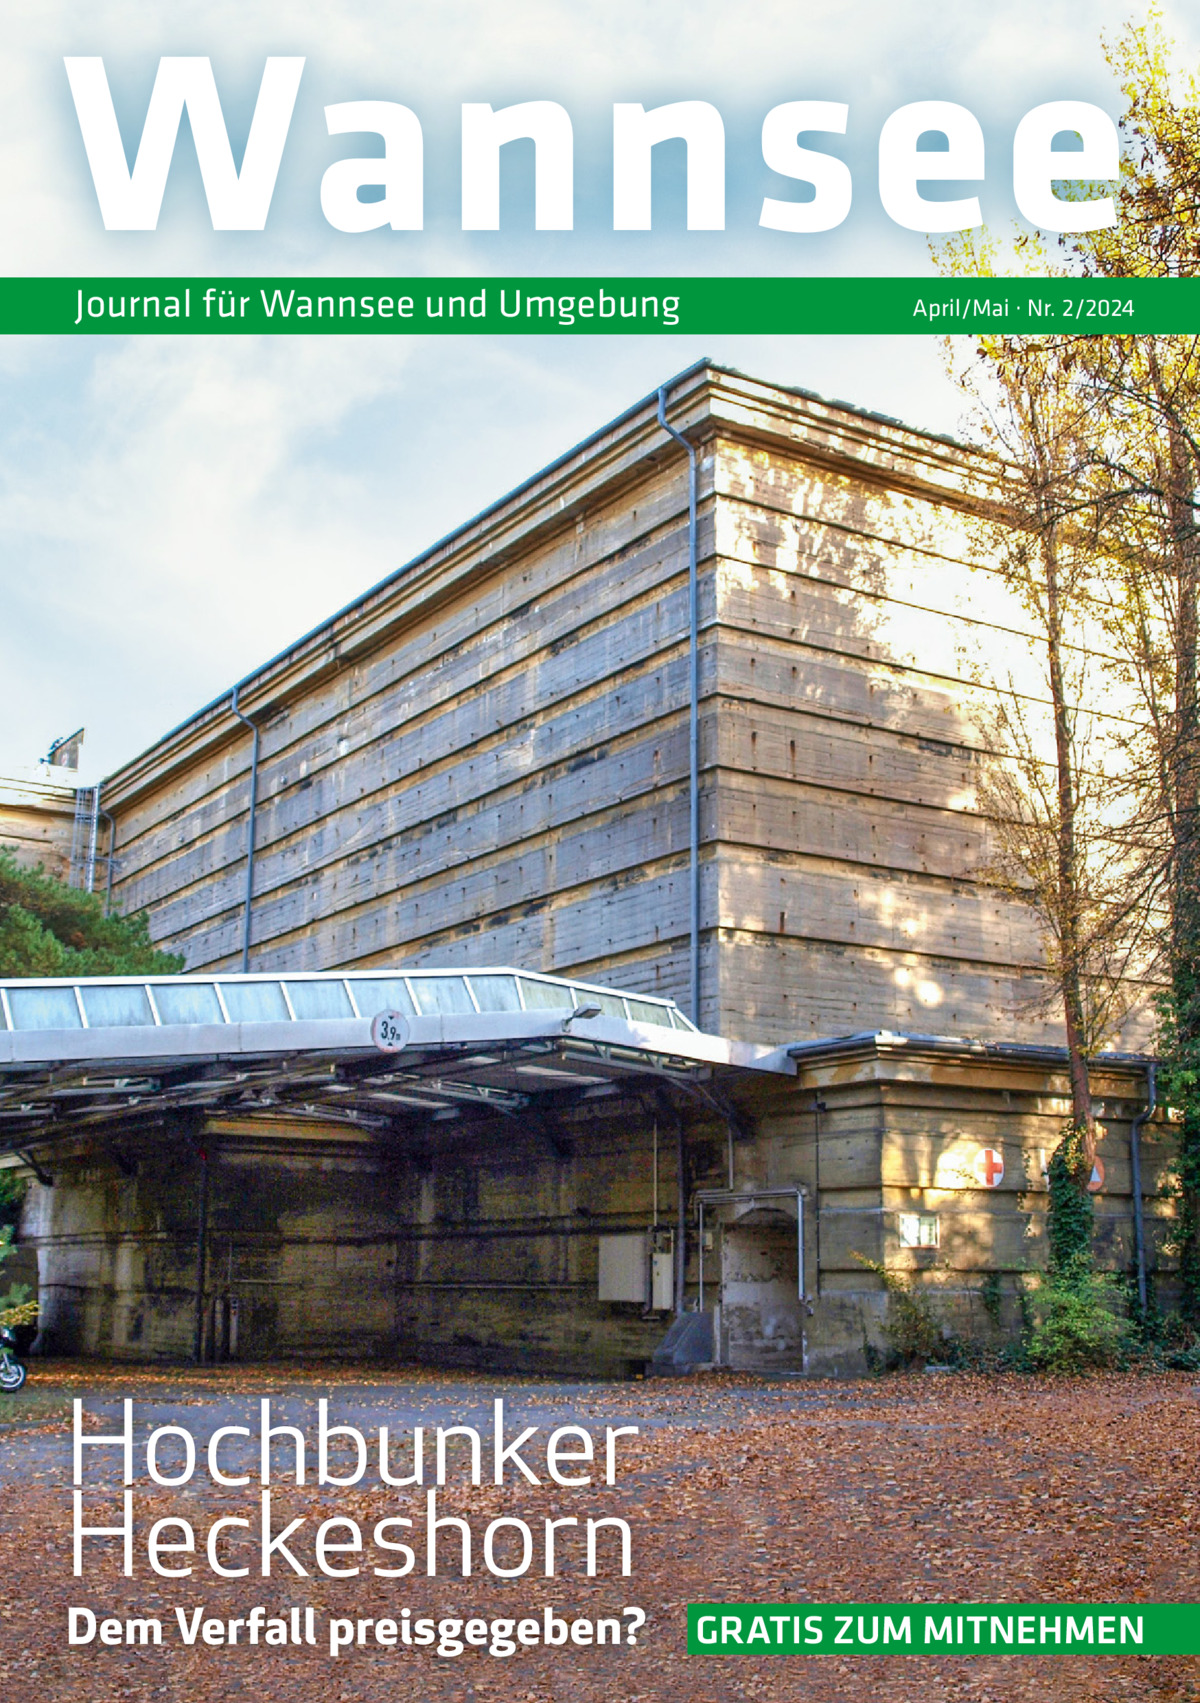 Wannsee Journal für Wannsee und Umgebung  April/Mai · Nr. 2/2024  Hochbunker Heckeshorn  Dem Verfall preisgegeben?  GRATIS ZUM MITNEHMEN